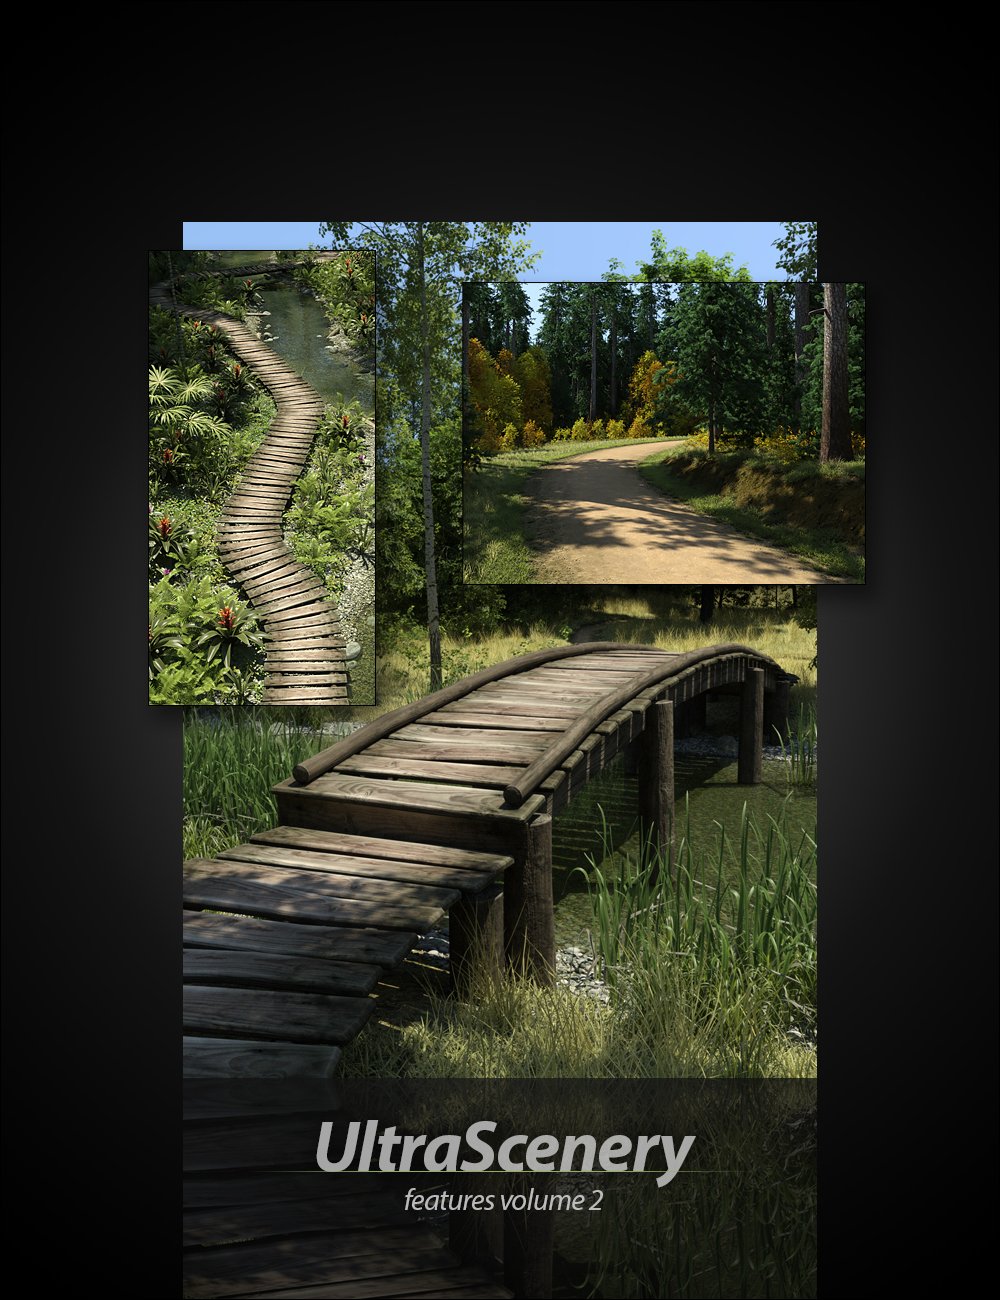 UltraScenery - Landscape Features Volume 2 by: HowieFarkes, 3D Models by Daz 3D